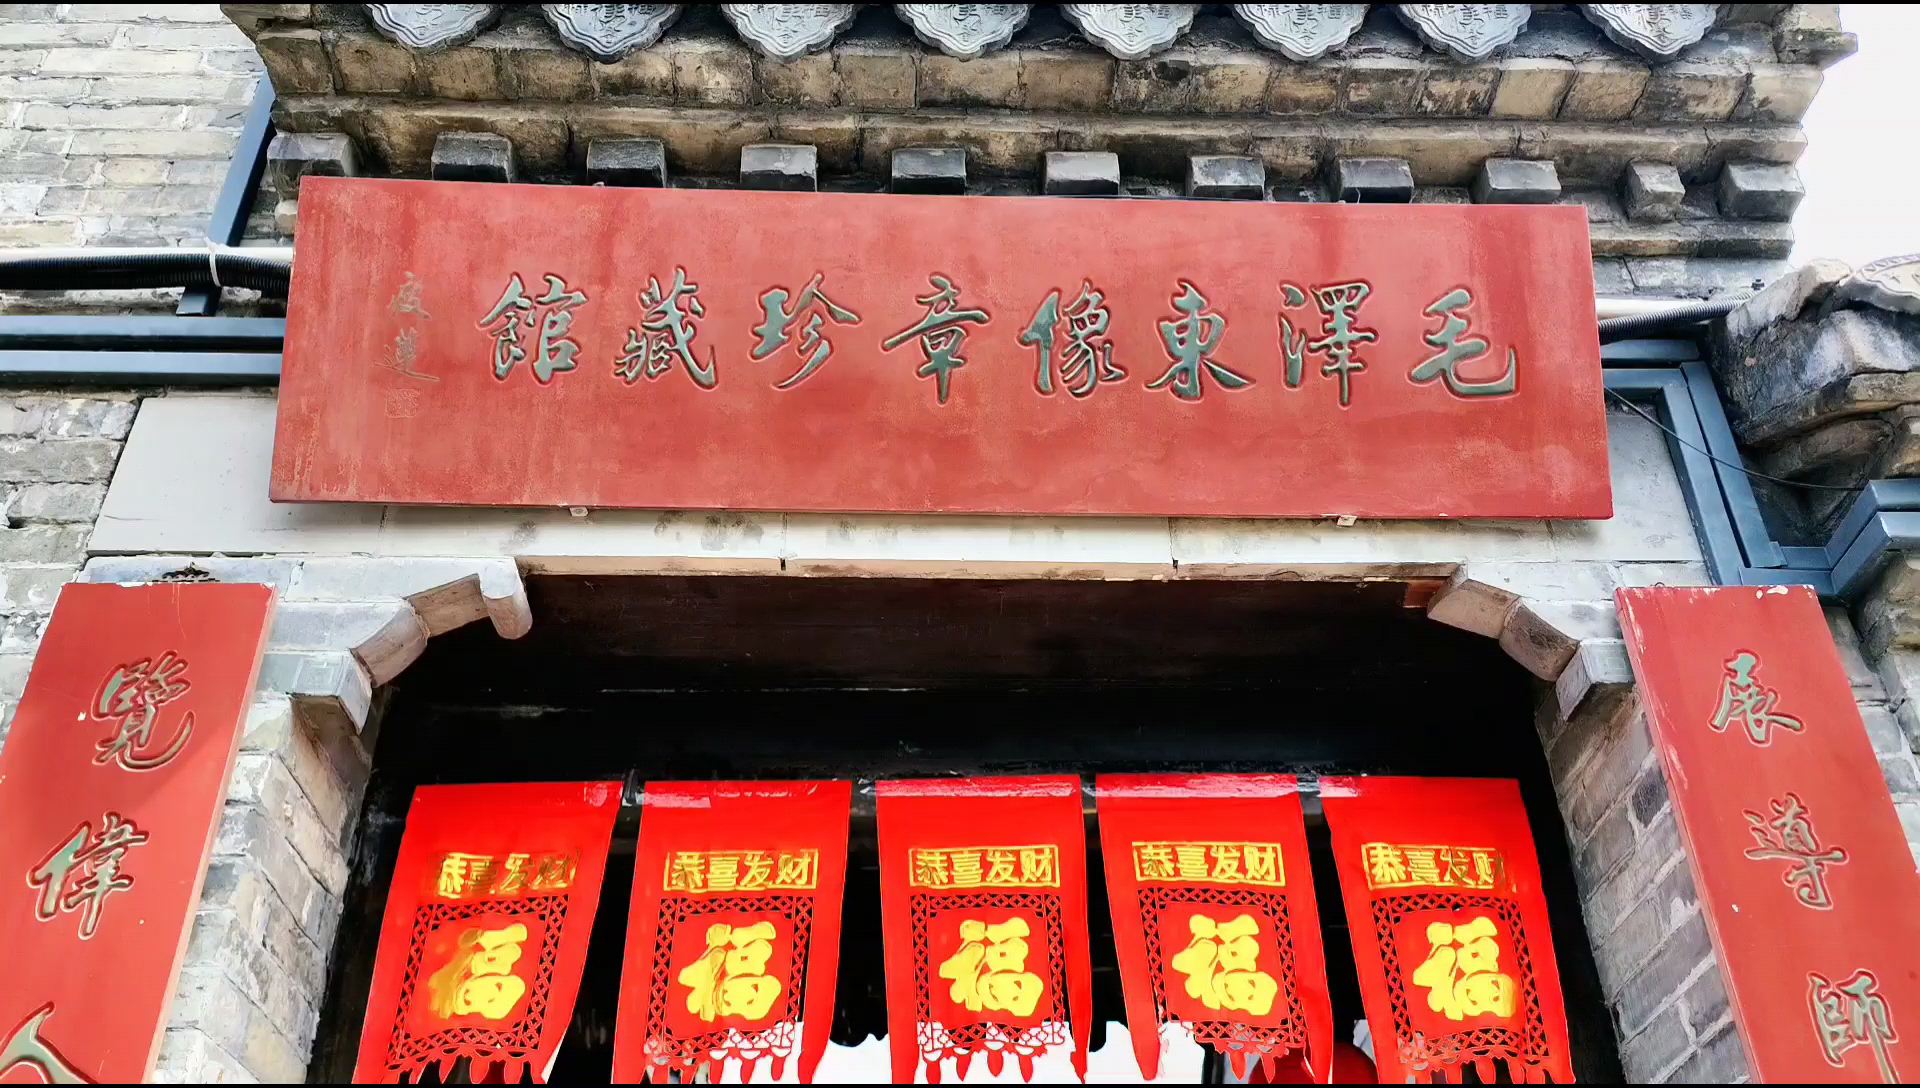 安丰古镇内的毛泽东像章珍藏馆，是一座富有历史底蕴与文化内涵的博物馆。  进入珍藏馆，首先映入眼帘的是